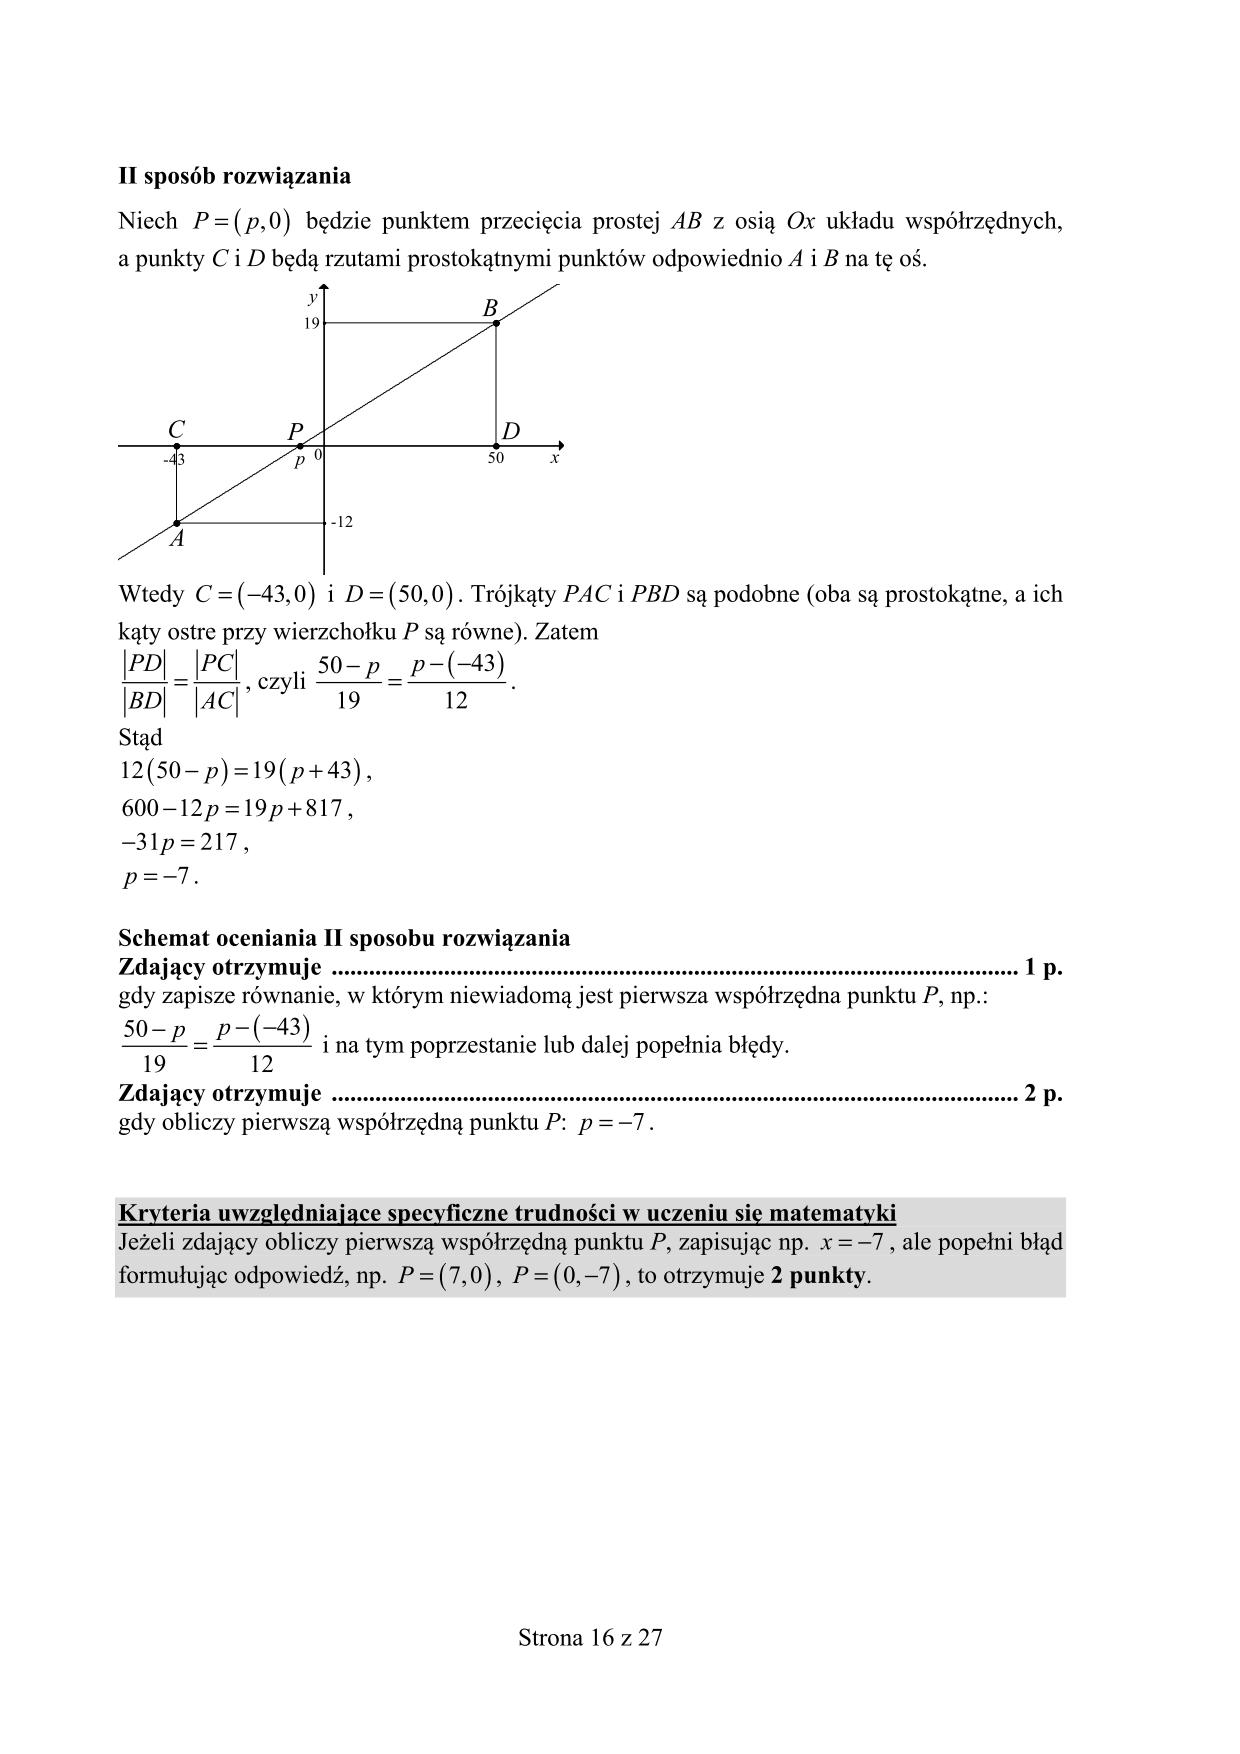 odpowiedzi-matematyka-poziom-podstawowy-matura-2015-16